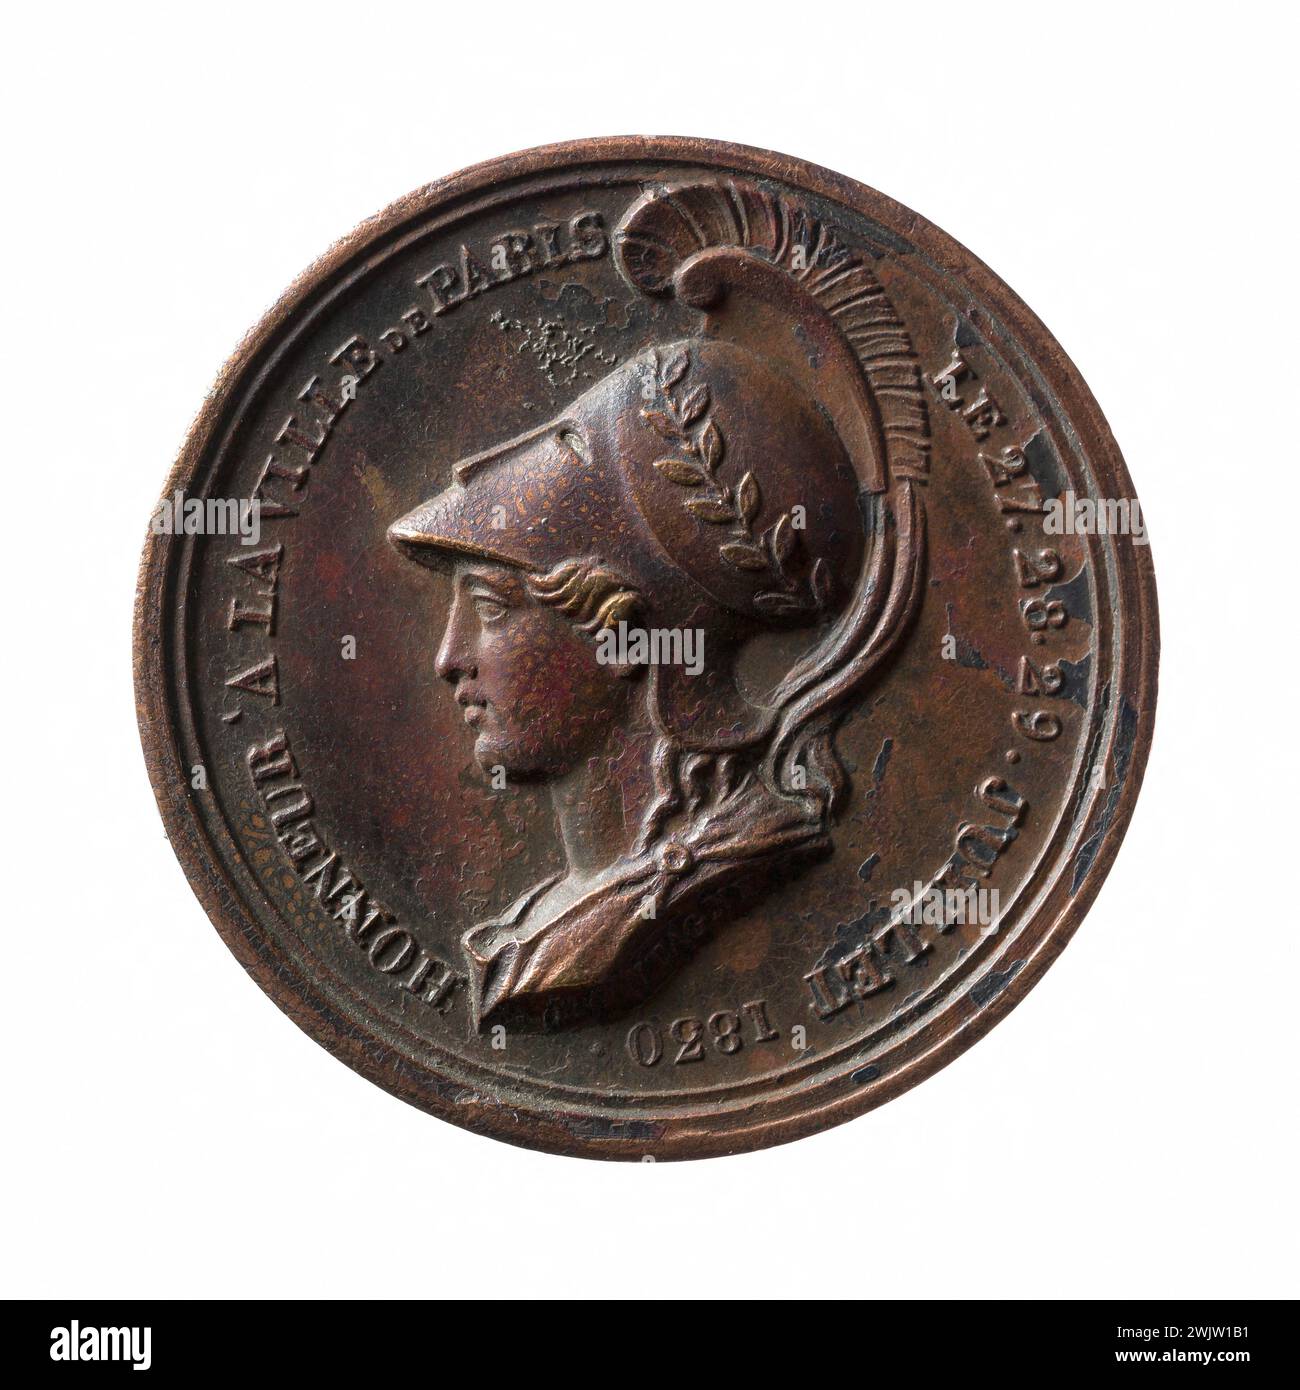 Jean-Pierre Montagny (1789-1862). Tribute to the Parisians, July 27-29, 1830. Cuper, 1830. Paris, Musée Carnavalet. Medal, numismatics Stock Photo